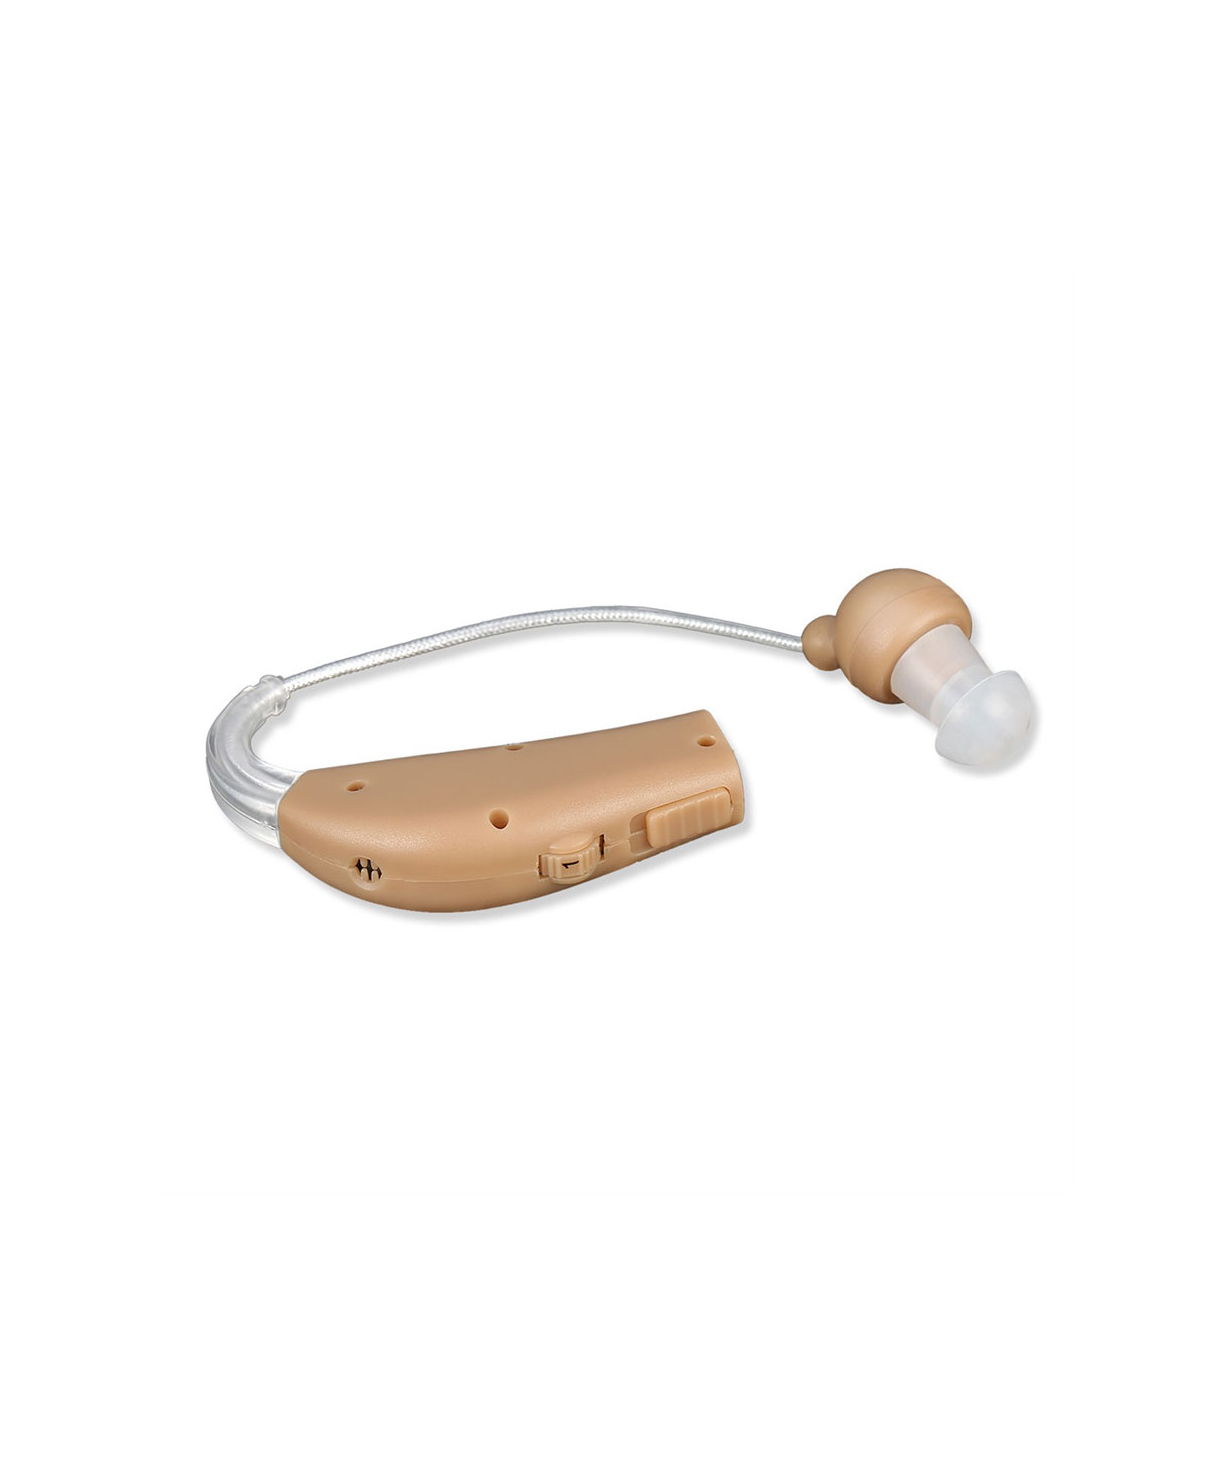 Լսողական սարք ULTRA SOUND AMPLIFIER